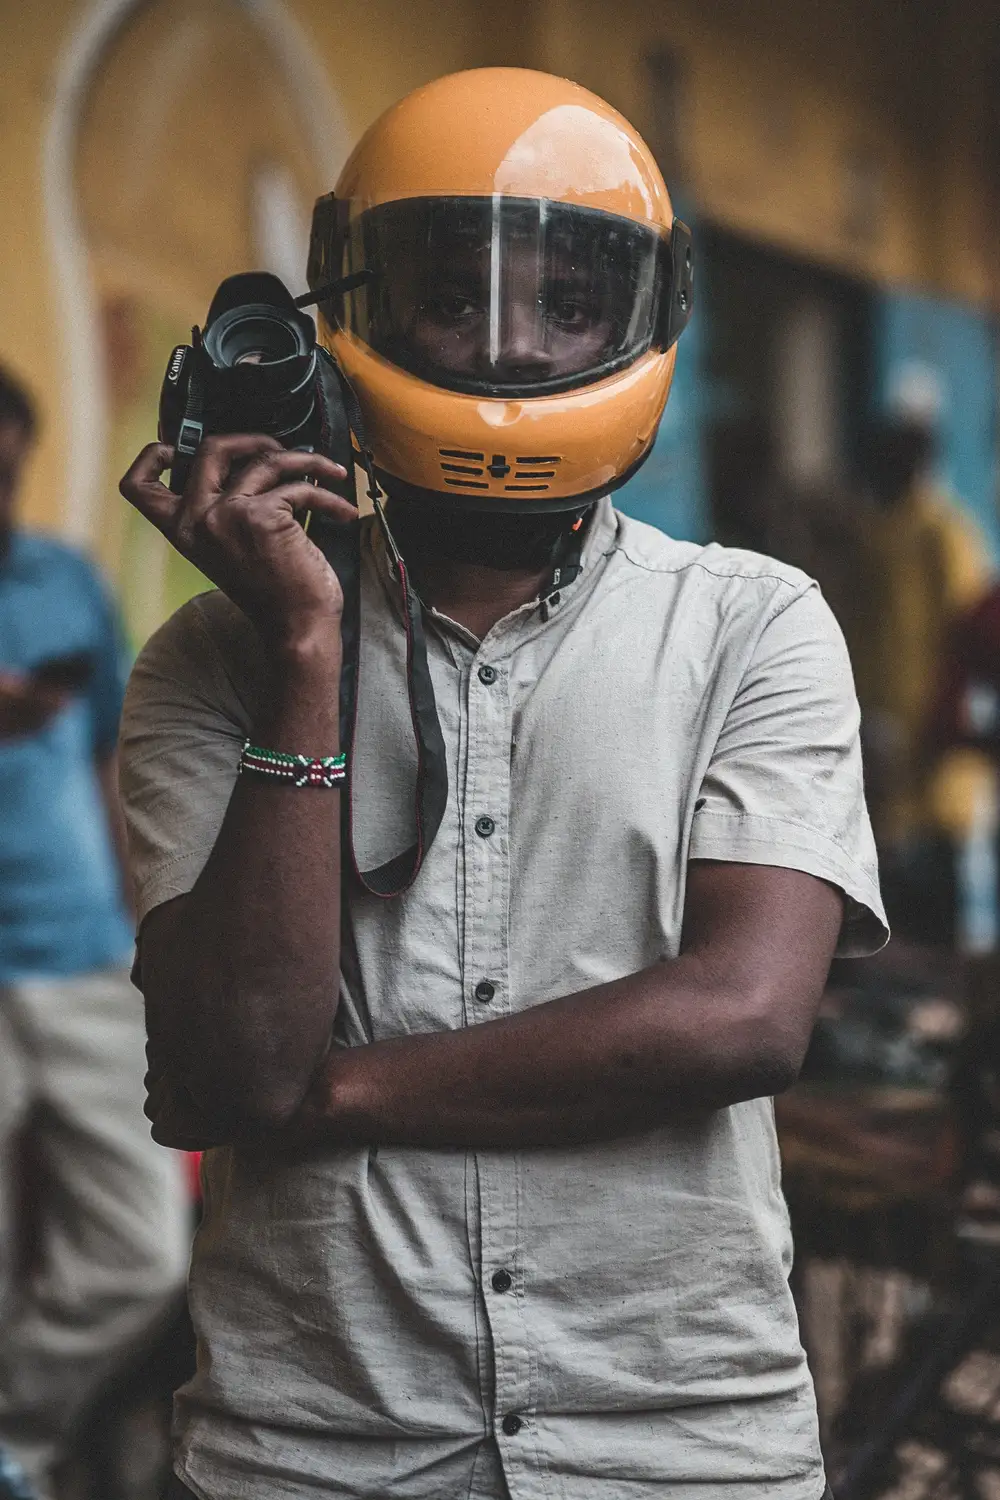 photographer wearing an helmet